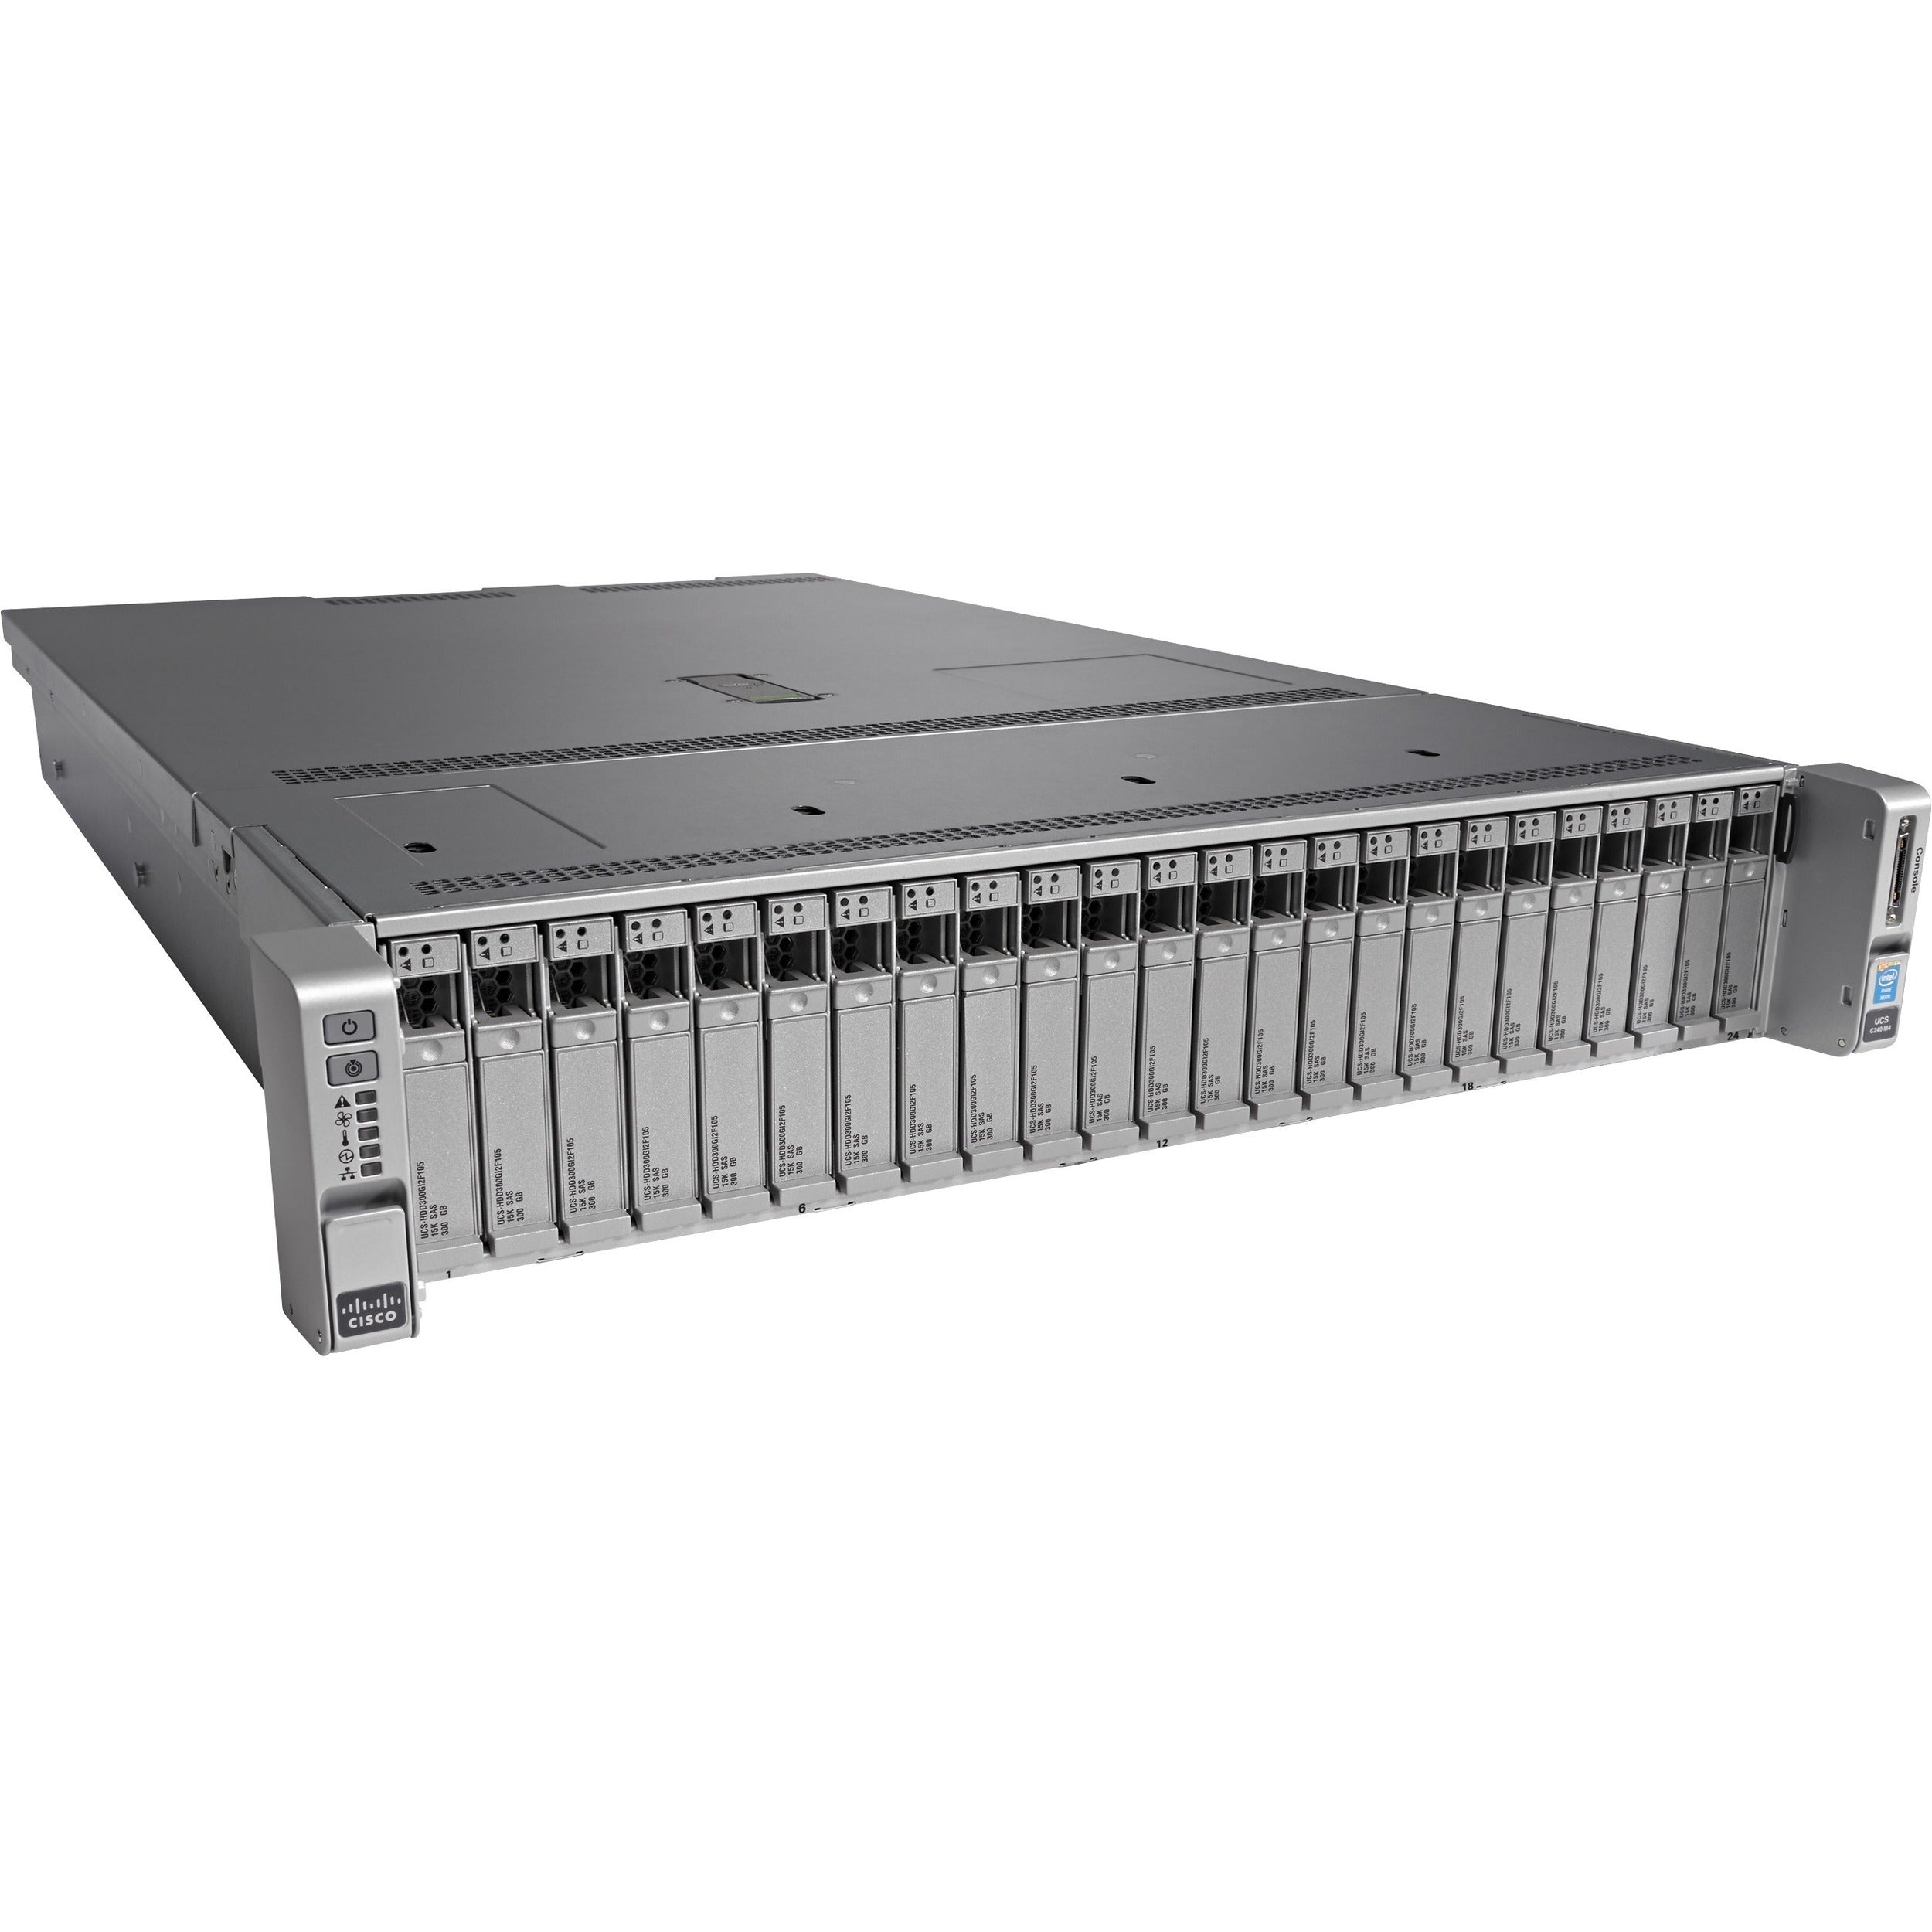 Cisco C240 M4 2U Rack Server - 2 x Intel Xeon E5-2620 v3 2.40 GHz - 16 GB RAM - 12Gb/s SAS, Serial Attached SCSI (SAS), Serial ATA Controller - UCS-SPR-C240M4-E2